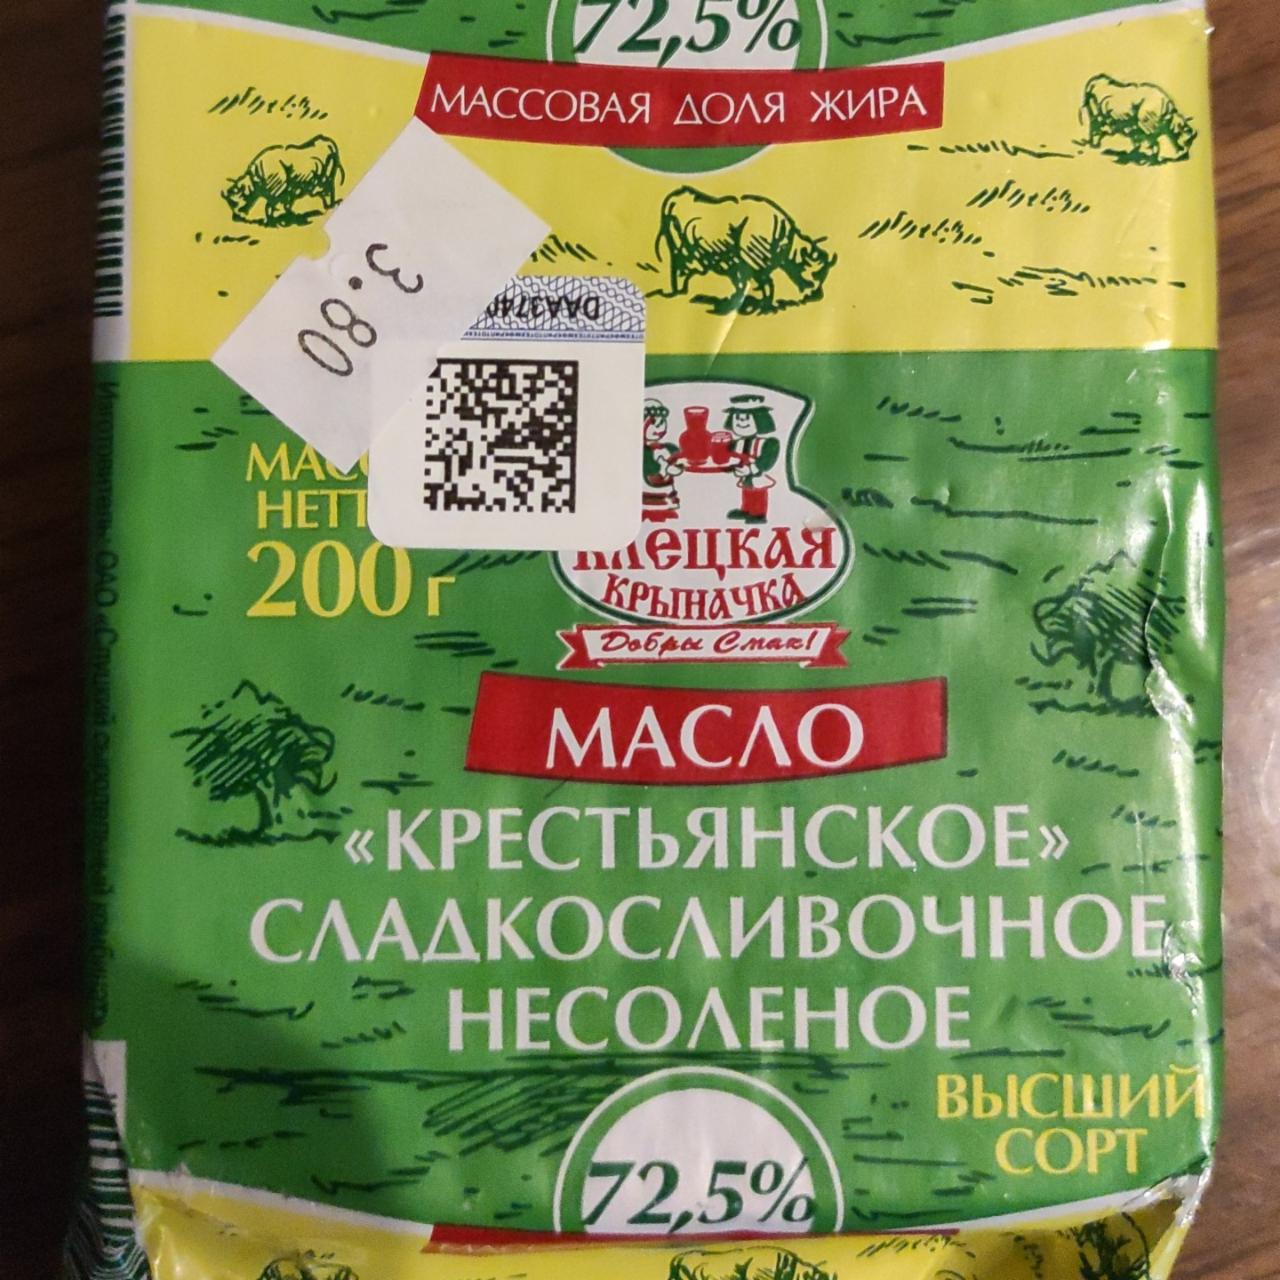 Фото - масло сливочное 72,5% Клёцкая Крыначка